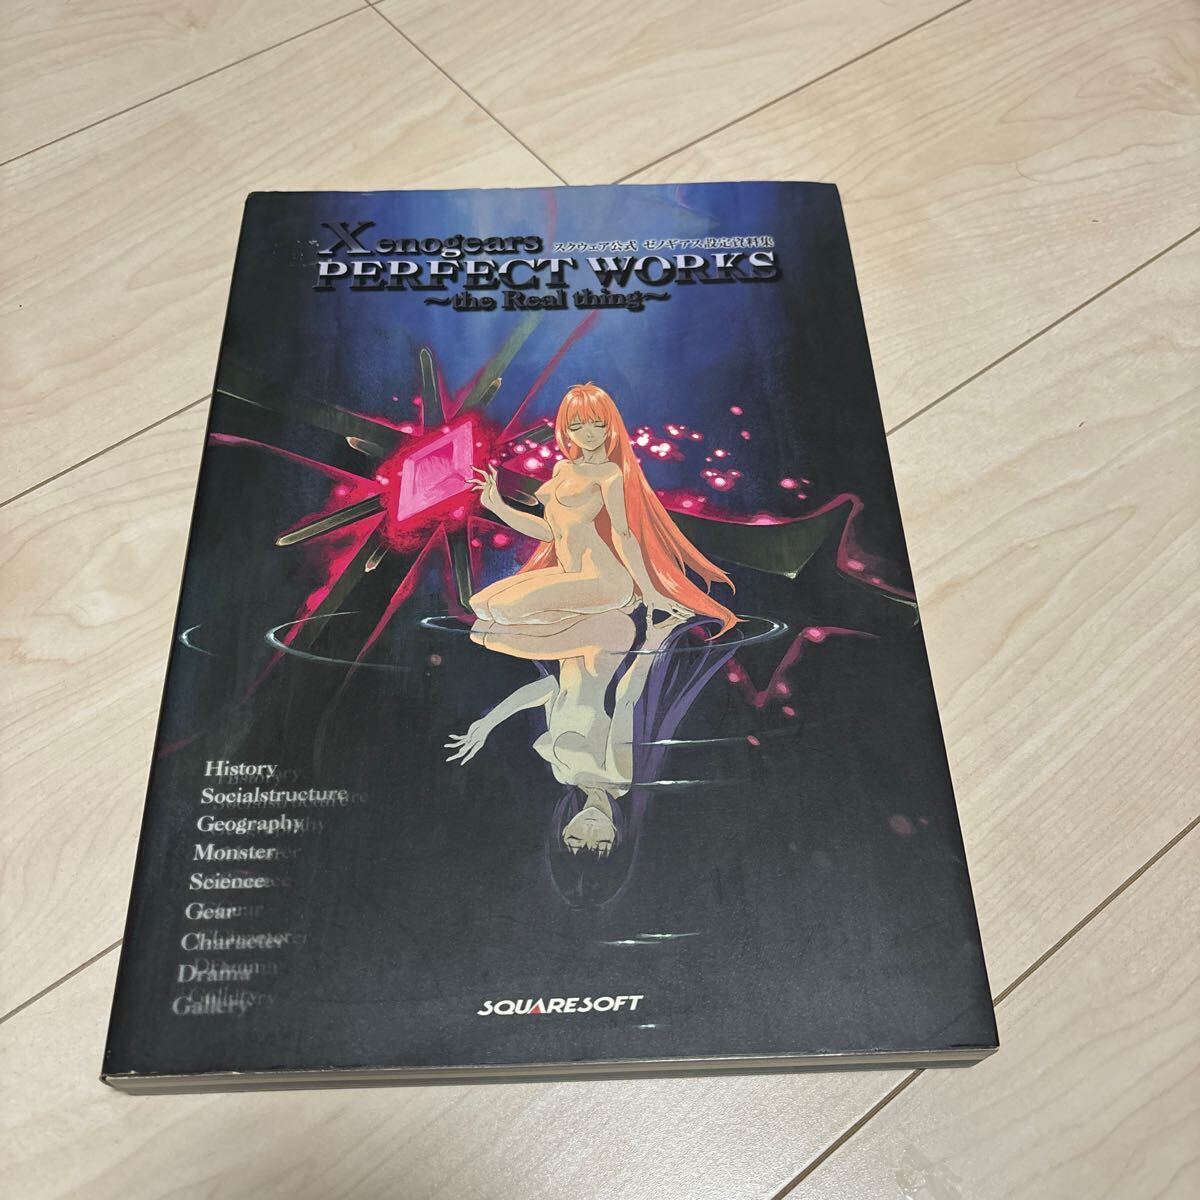  Xenogears PERFECT Works сборник материалов для создания первая версия книга